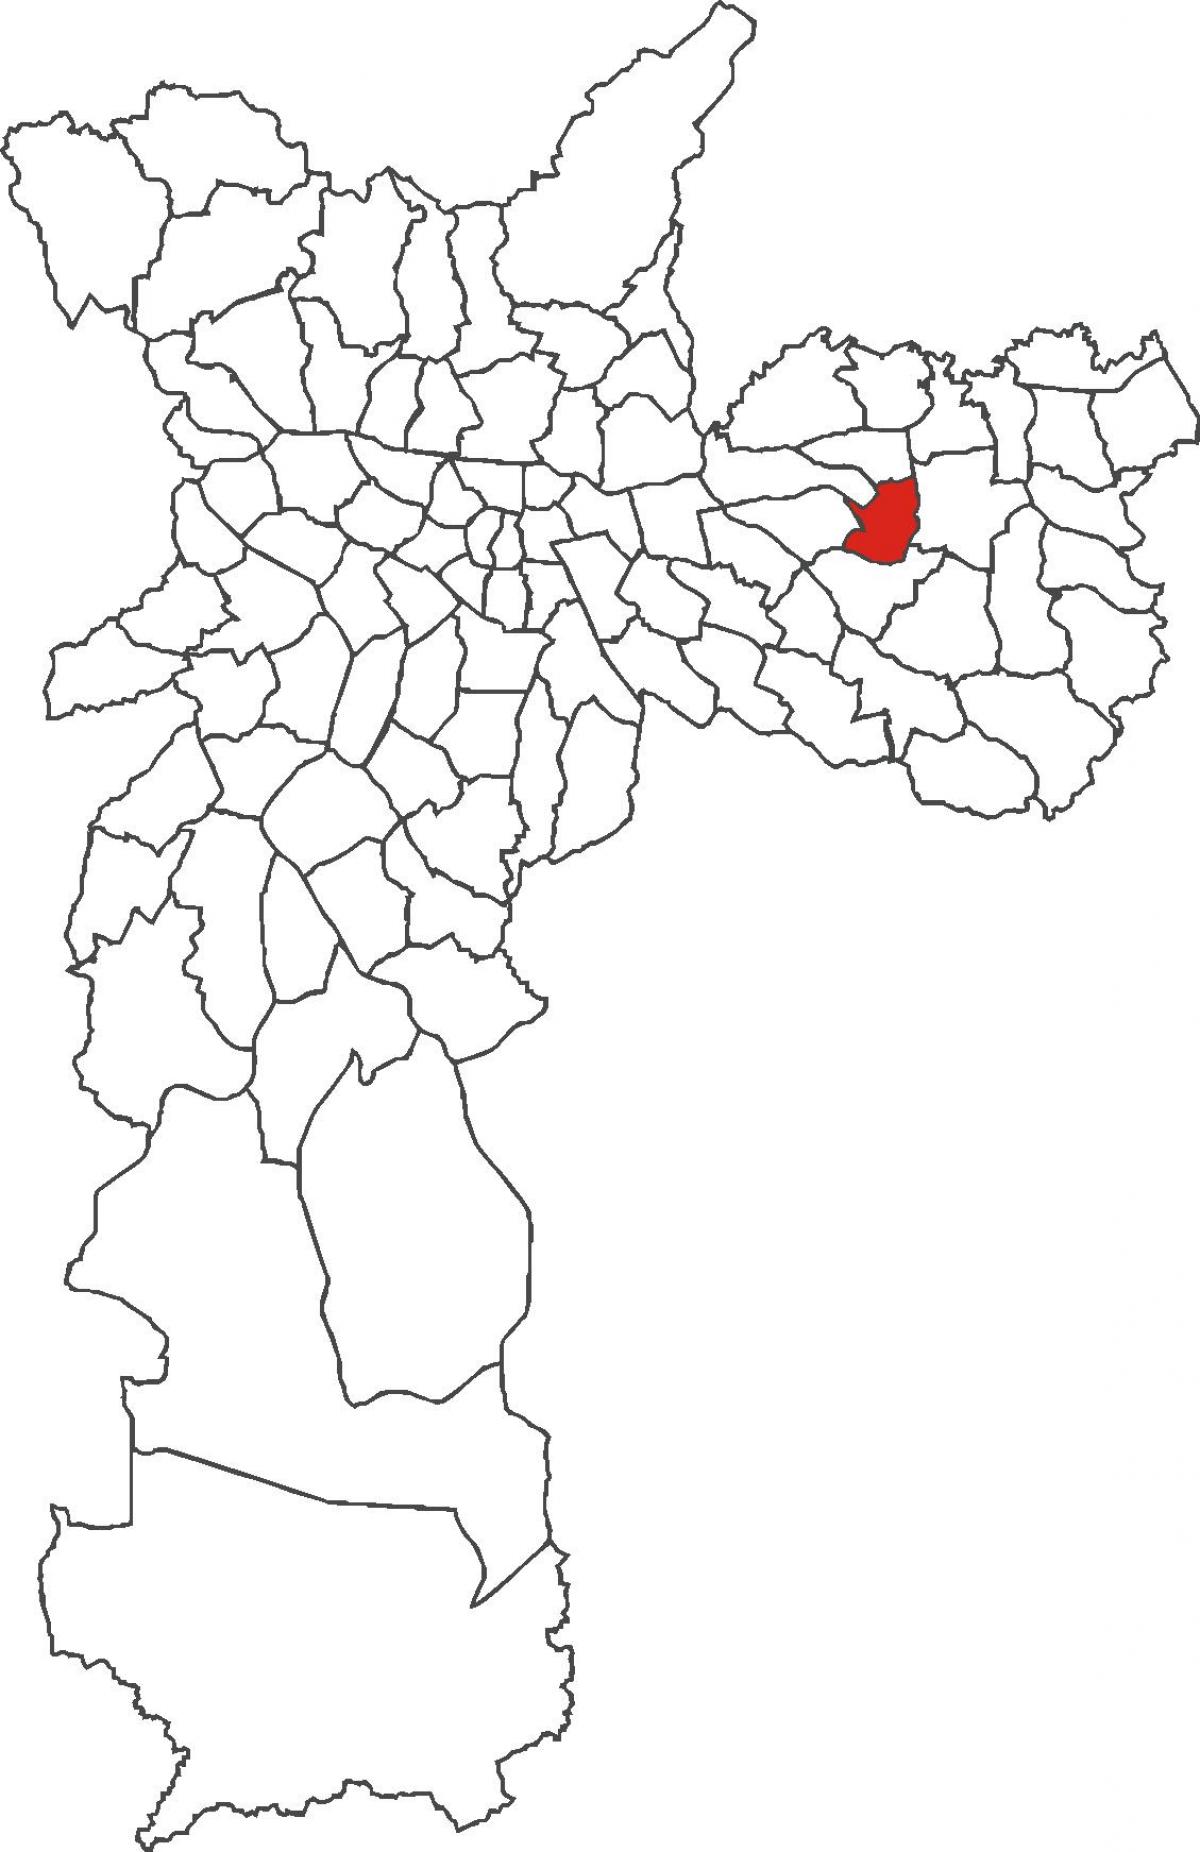 地図のアルツールAlvim地区